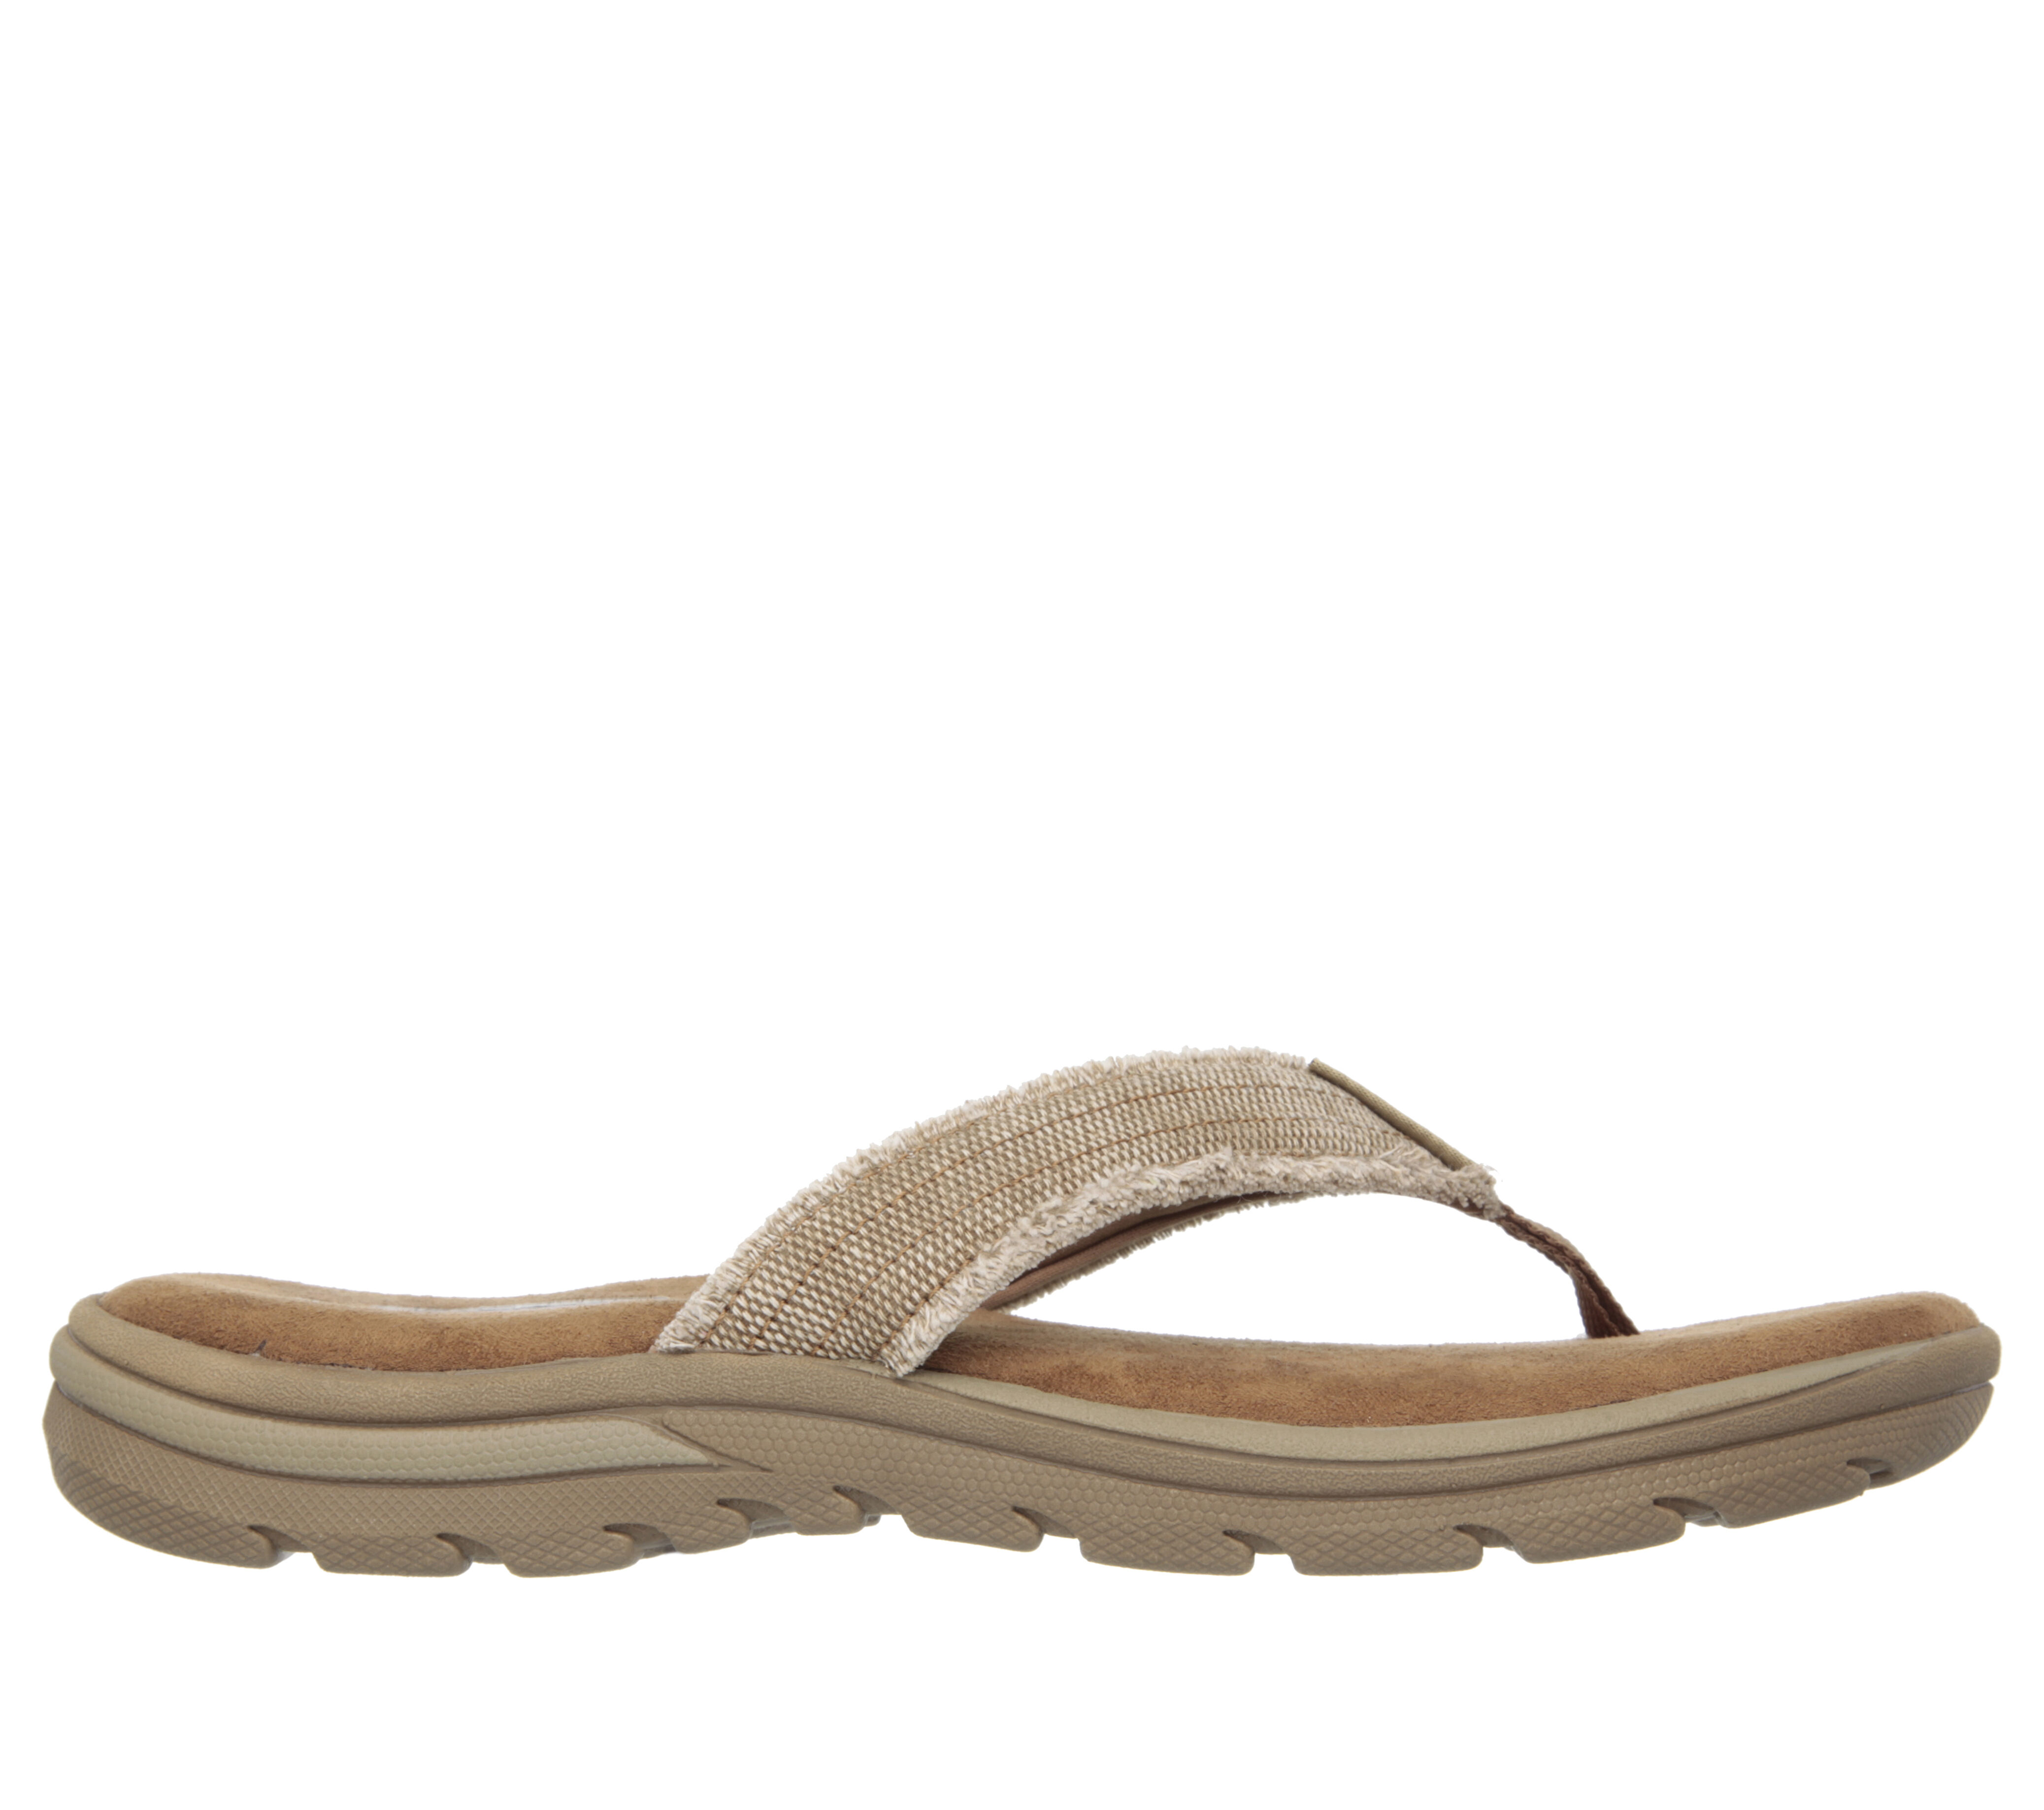 skechers sandals in canada